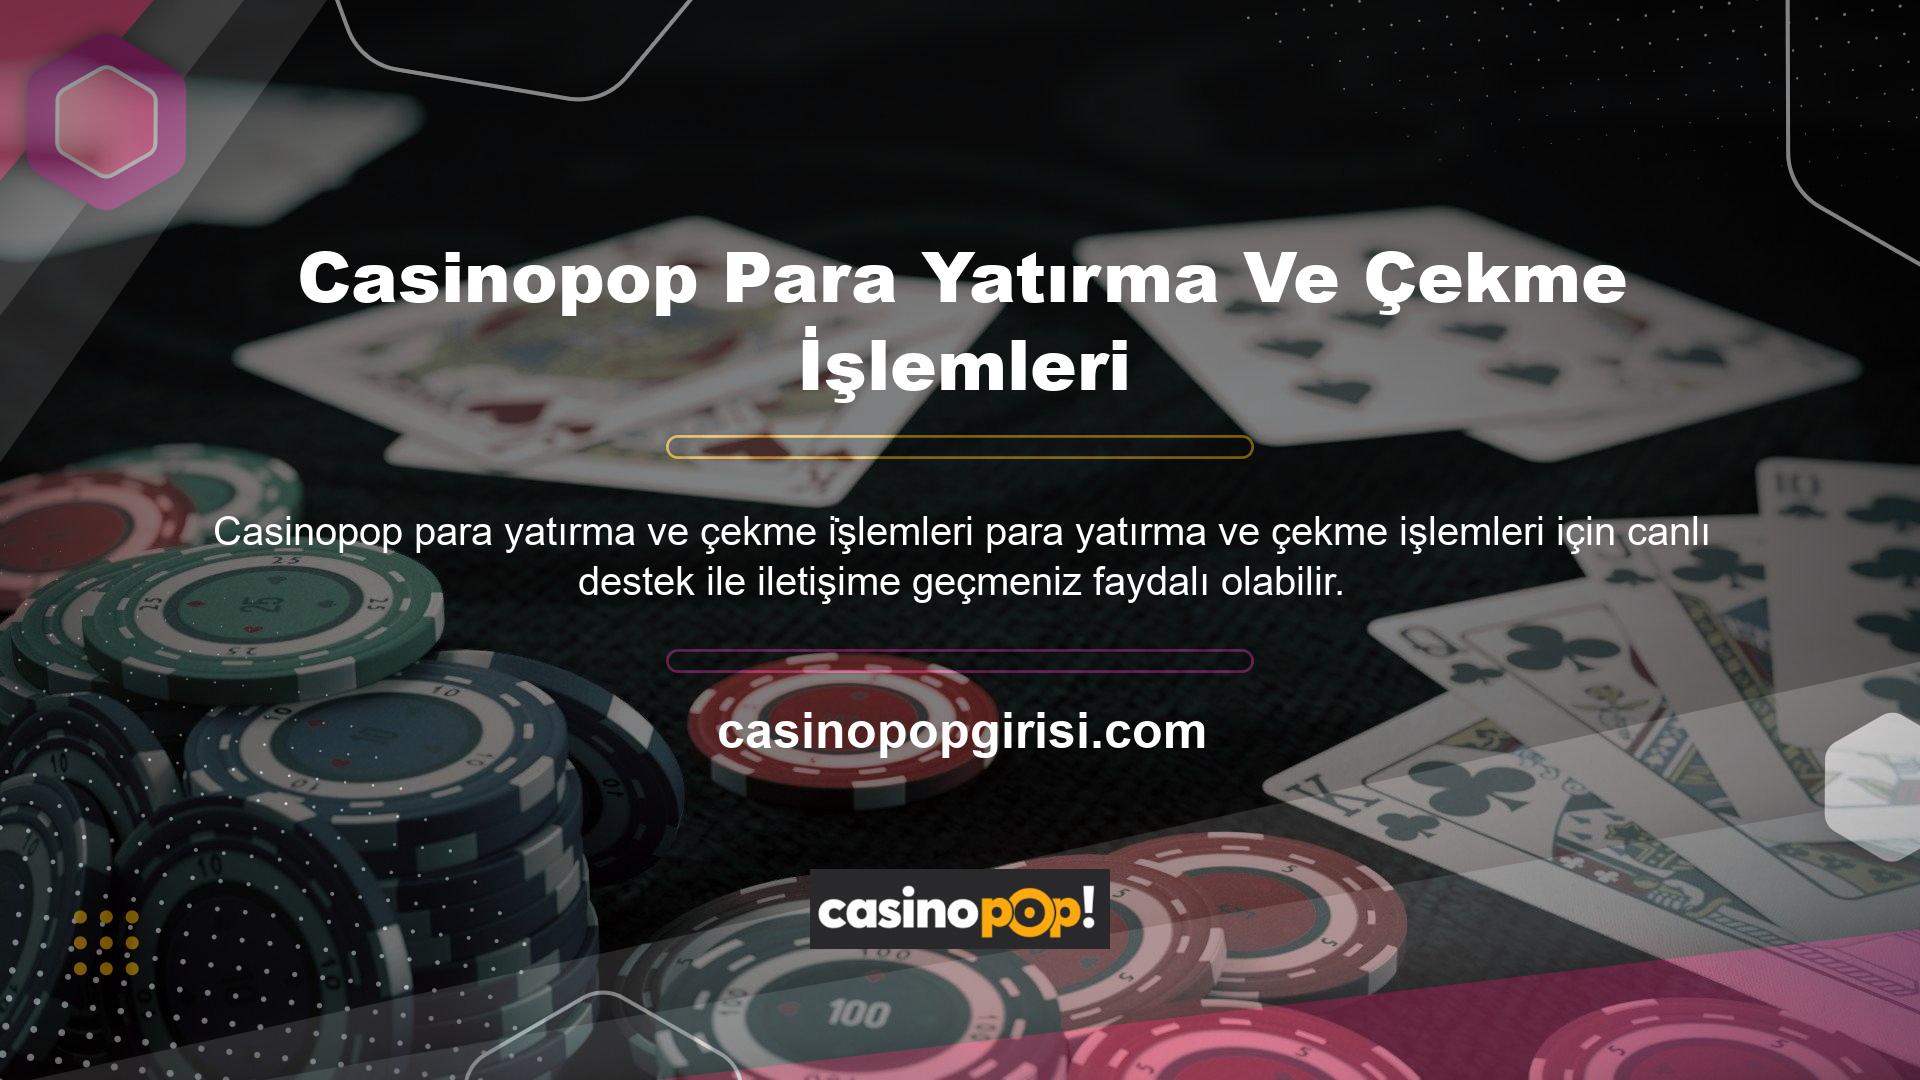 Casinopop kullanılan teknoloji ve para yatırma ve çekme limitleri sürekli değişiyor, bu nedenle müşteri desteğine ayak uydurmak önemlidir